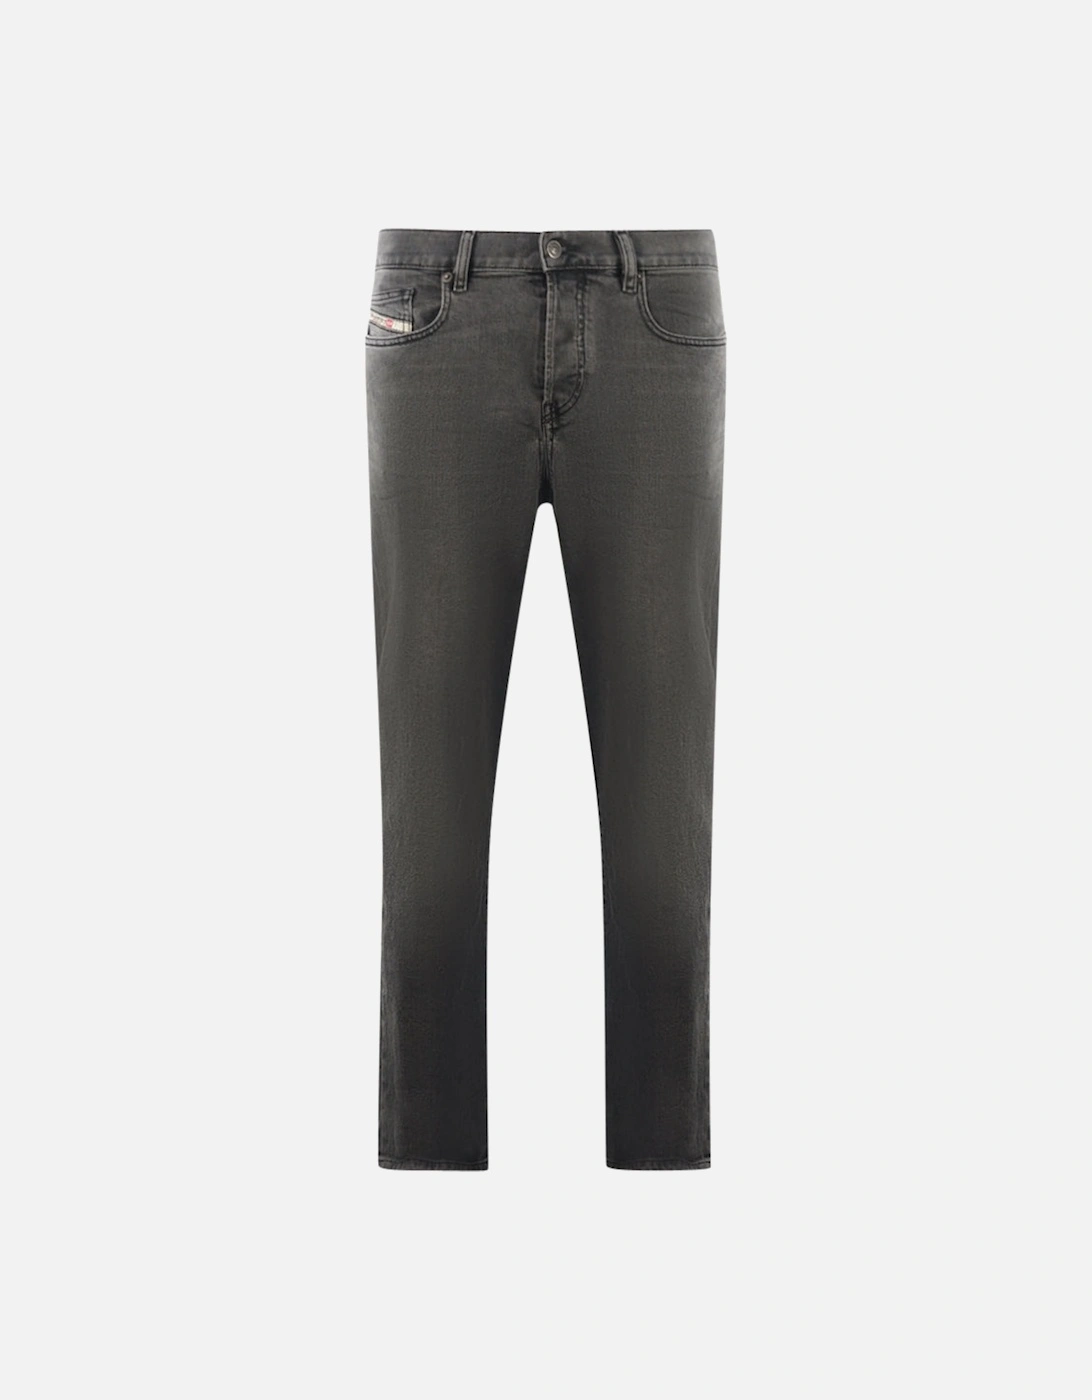 D-Viker 09D49 Grey Jeans, 3 of 2